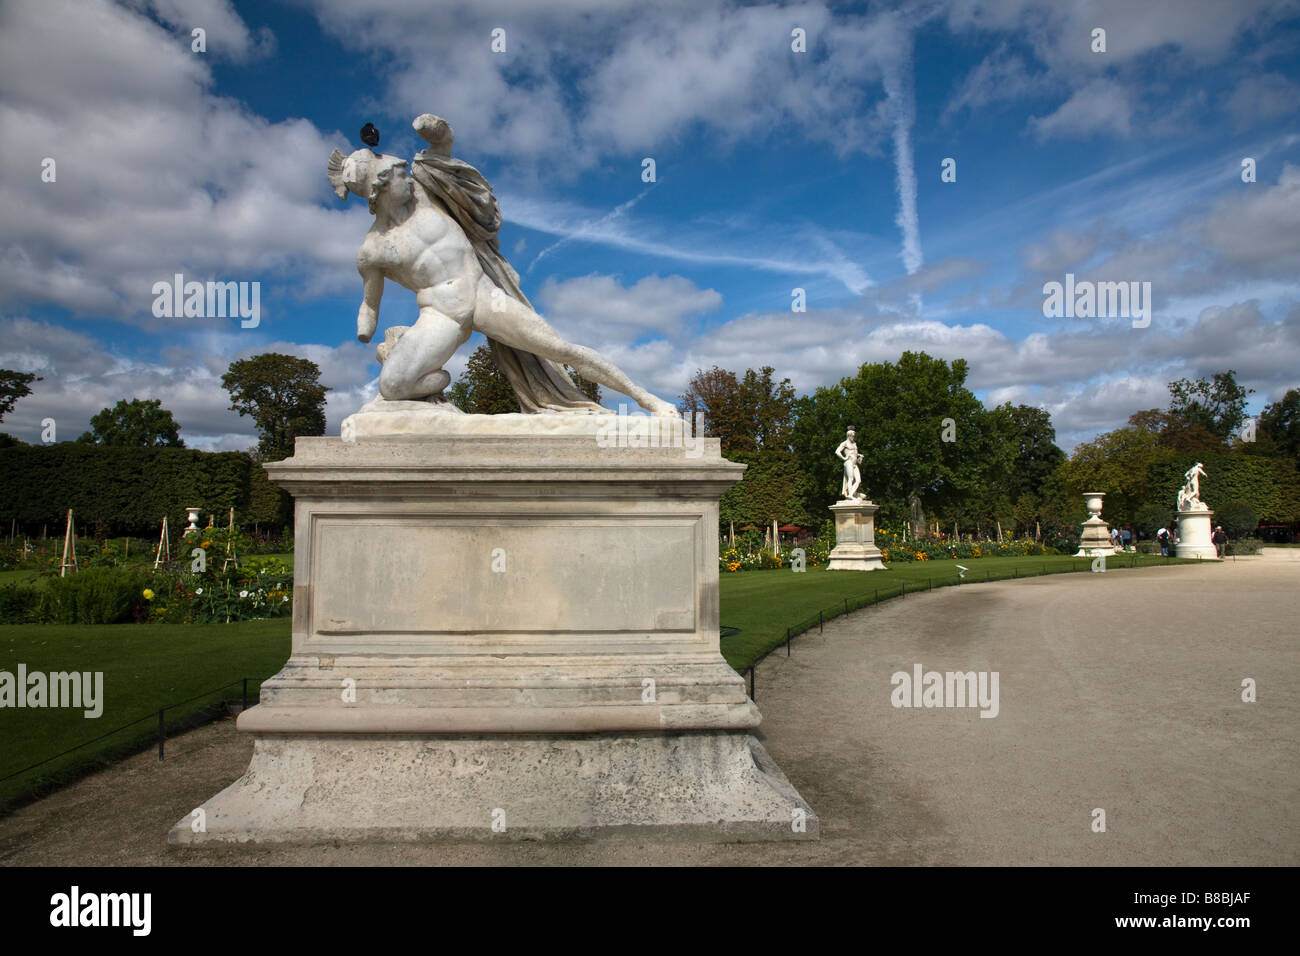 Drammatica cielo blu dietro le sculture Tuileries sculpture garden al di fuori del mondo famoso Louvre art museum Parigi Francia pigeon siede sulla testa della statua Foto Stock